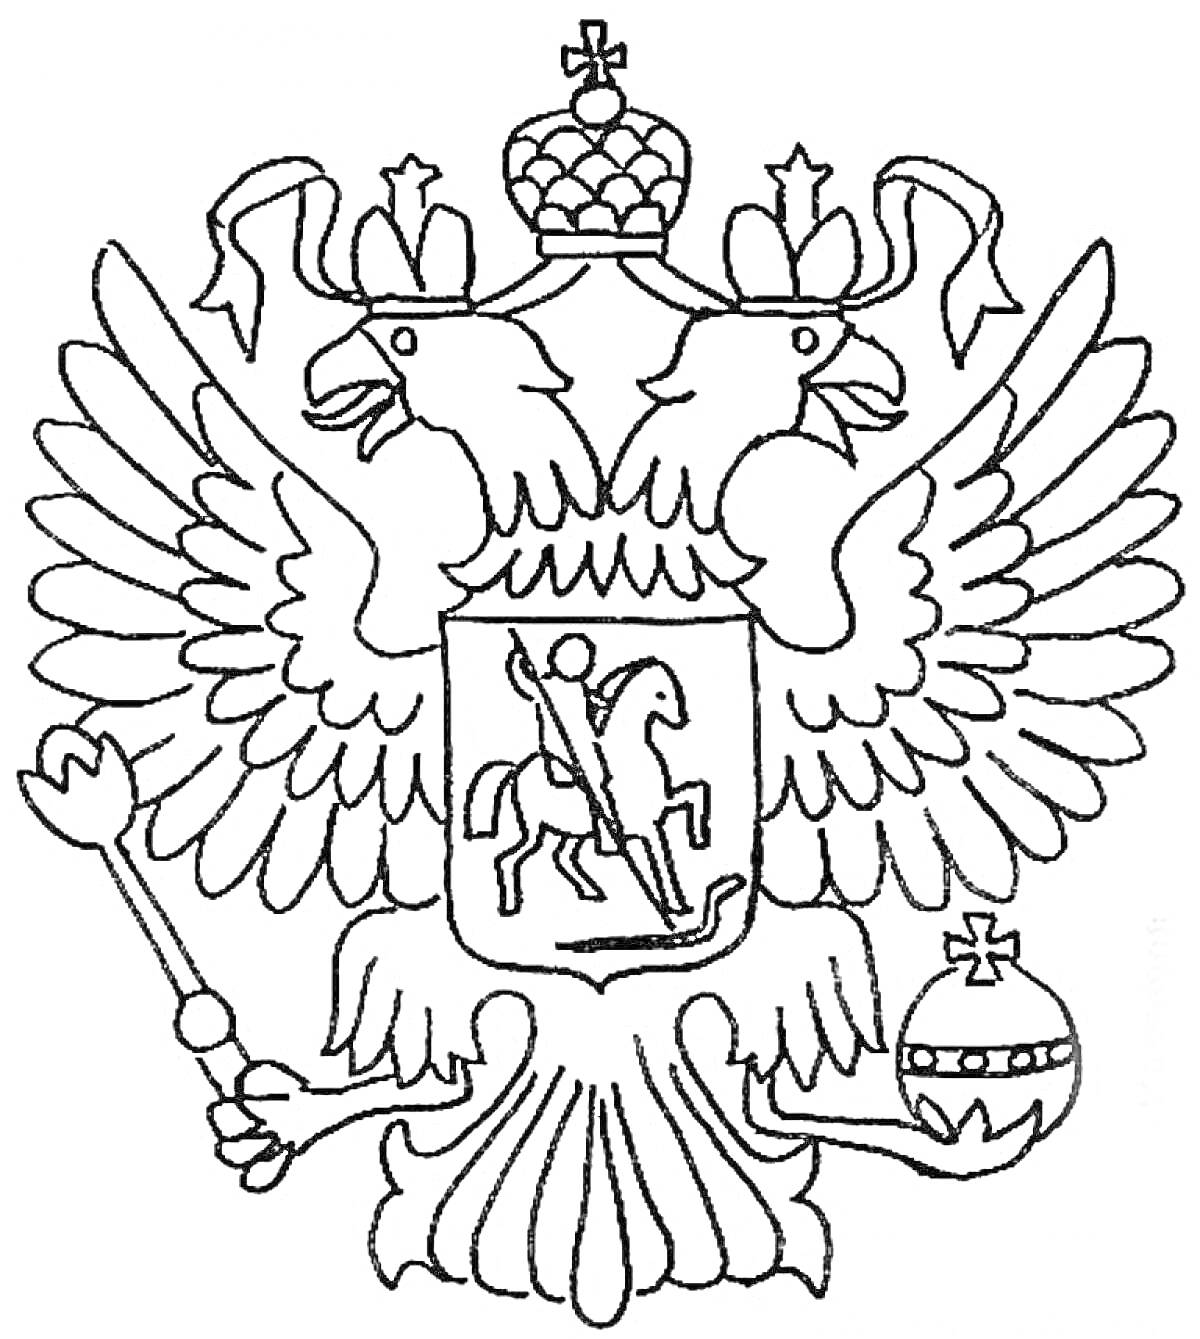 Герб России с двуглавым орлом, держащим скипетр и державу, и изображением святого Георгия Победоносца на щите